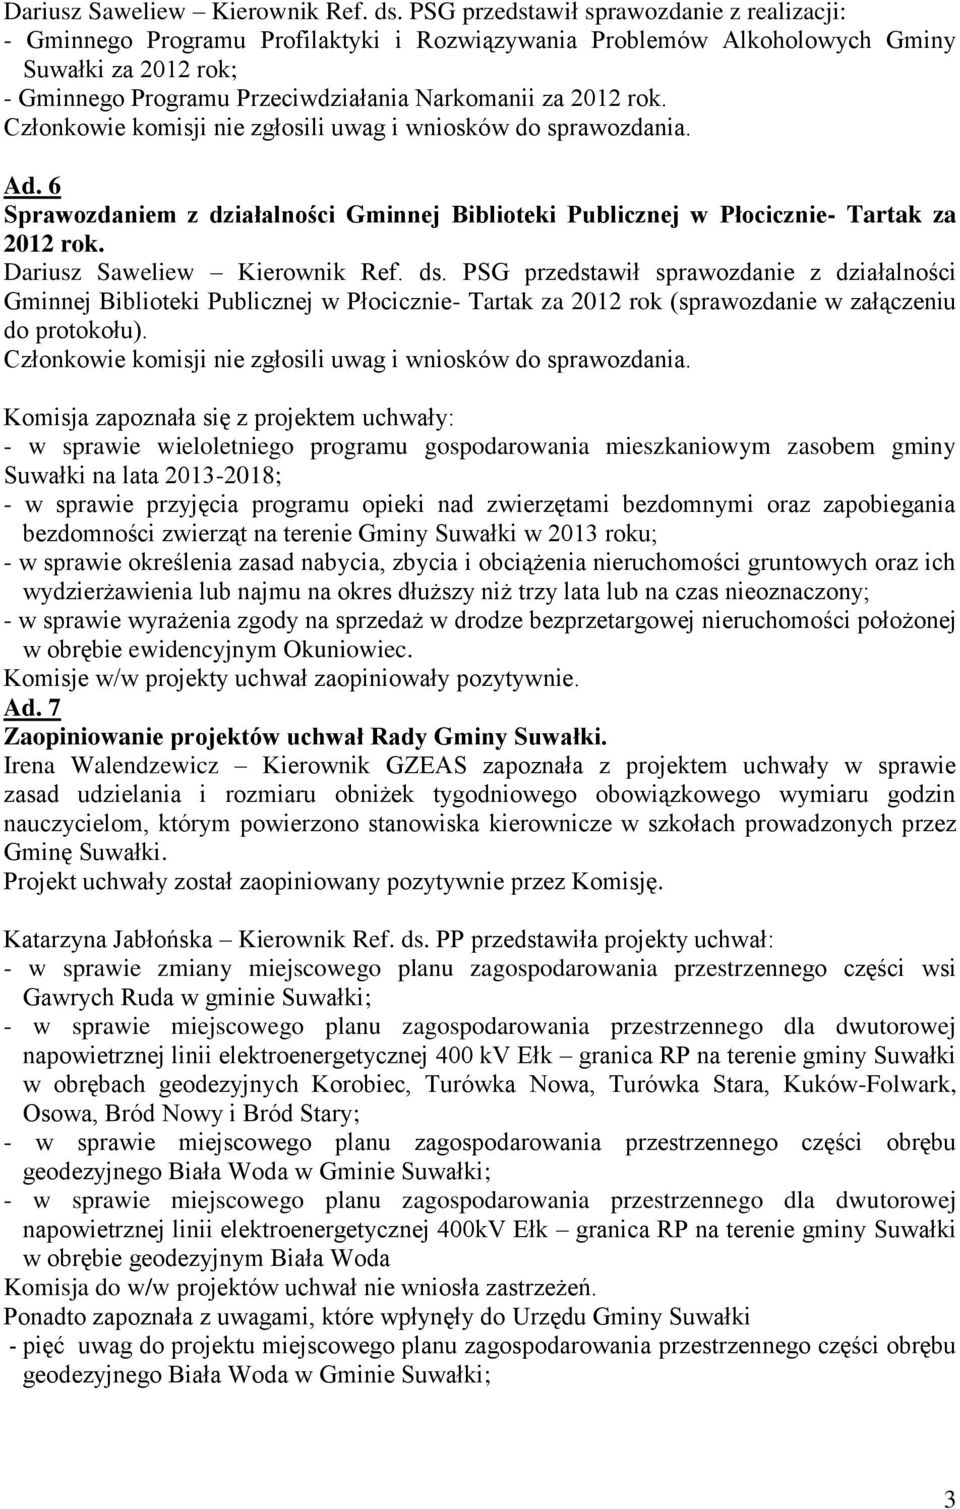 rok. Ad. 6 Sprawozdaniem z działalności Gminnej Biblioteki Publicznej w Płocicznie- Tartak za 2012 rok.